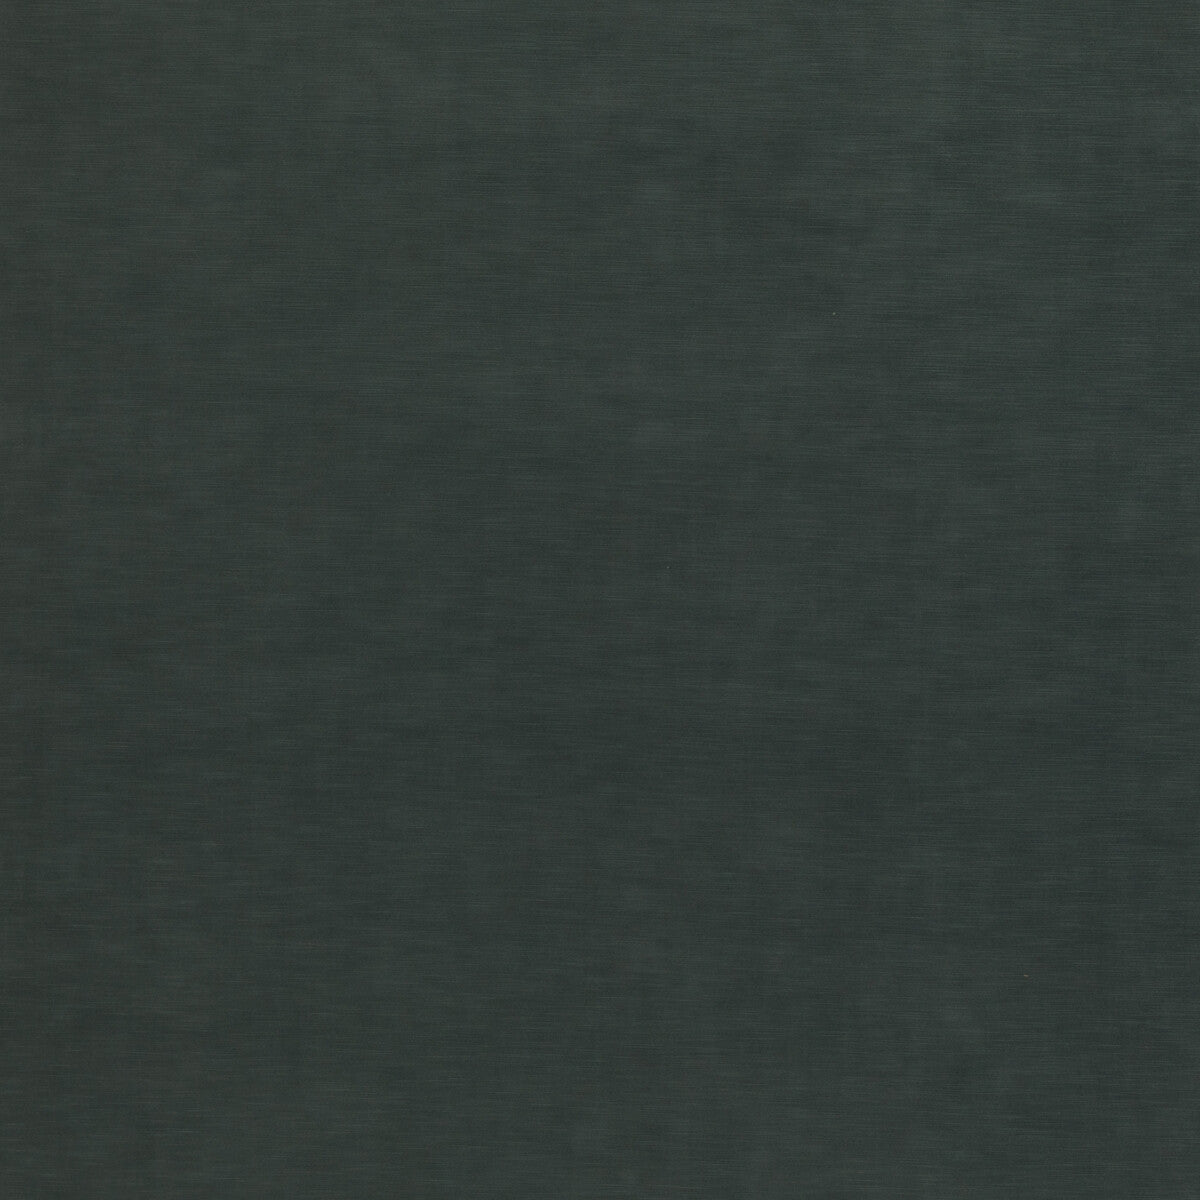 Quintessential Velvet fabric in aqua color - pattern ED85359.725.0 - by Threads in the Quintessential Velvet collection